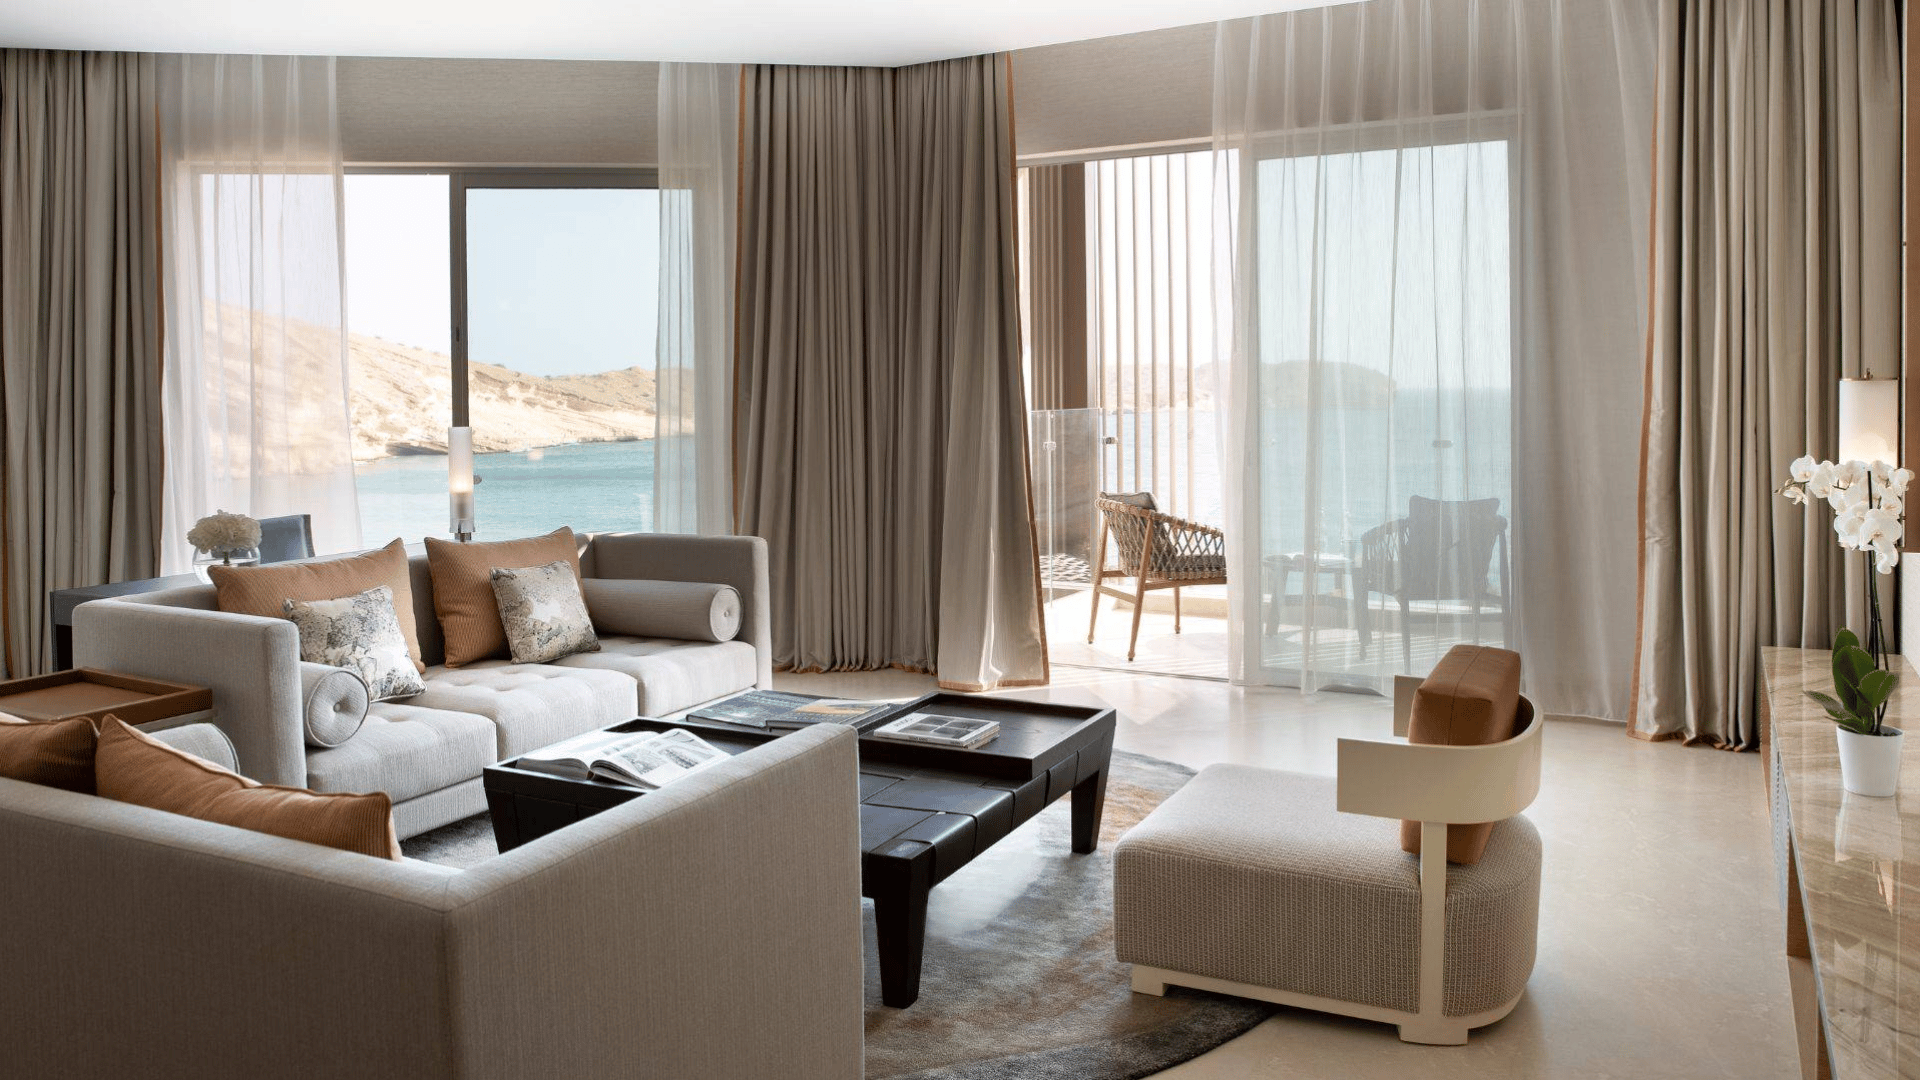 Jumeirah-gibt-exklusives-Resort-Deb-t-im-Oman